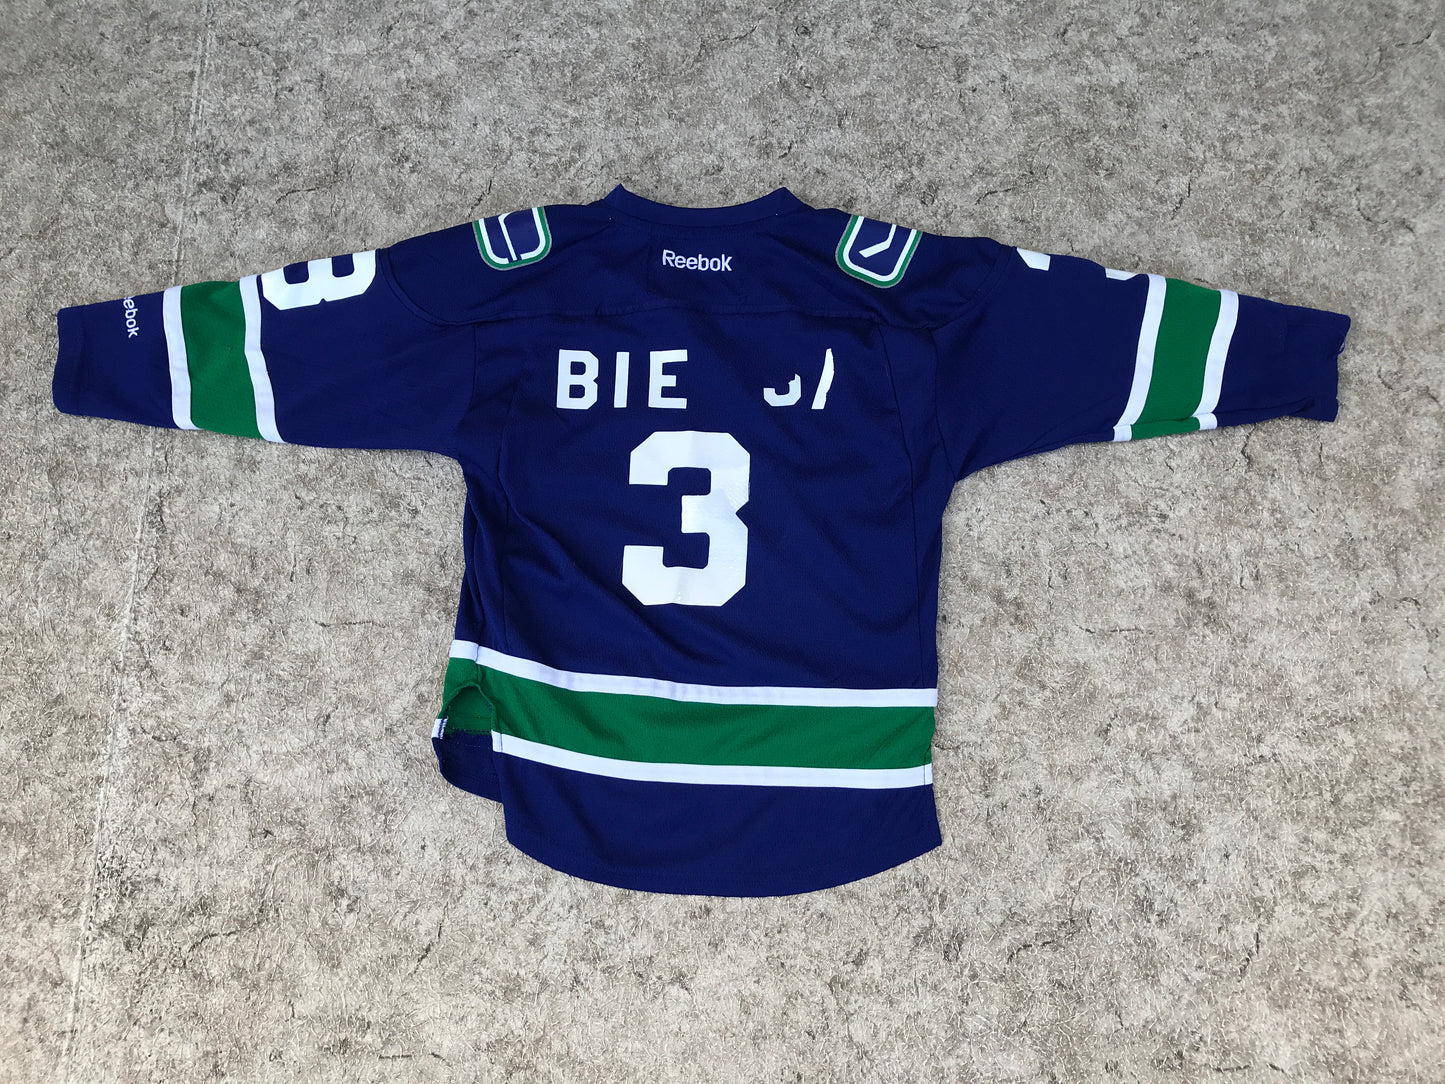 Hockey Jersey Child Size 4-7 Reebok Vancouver Canucks Blue